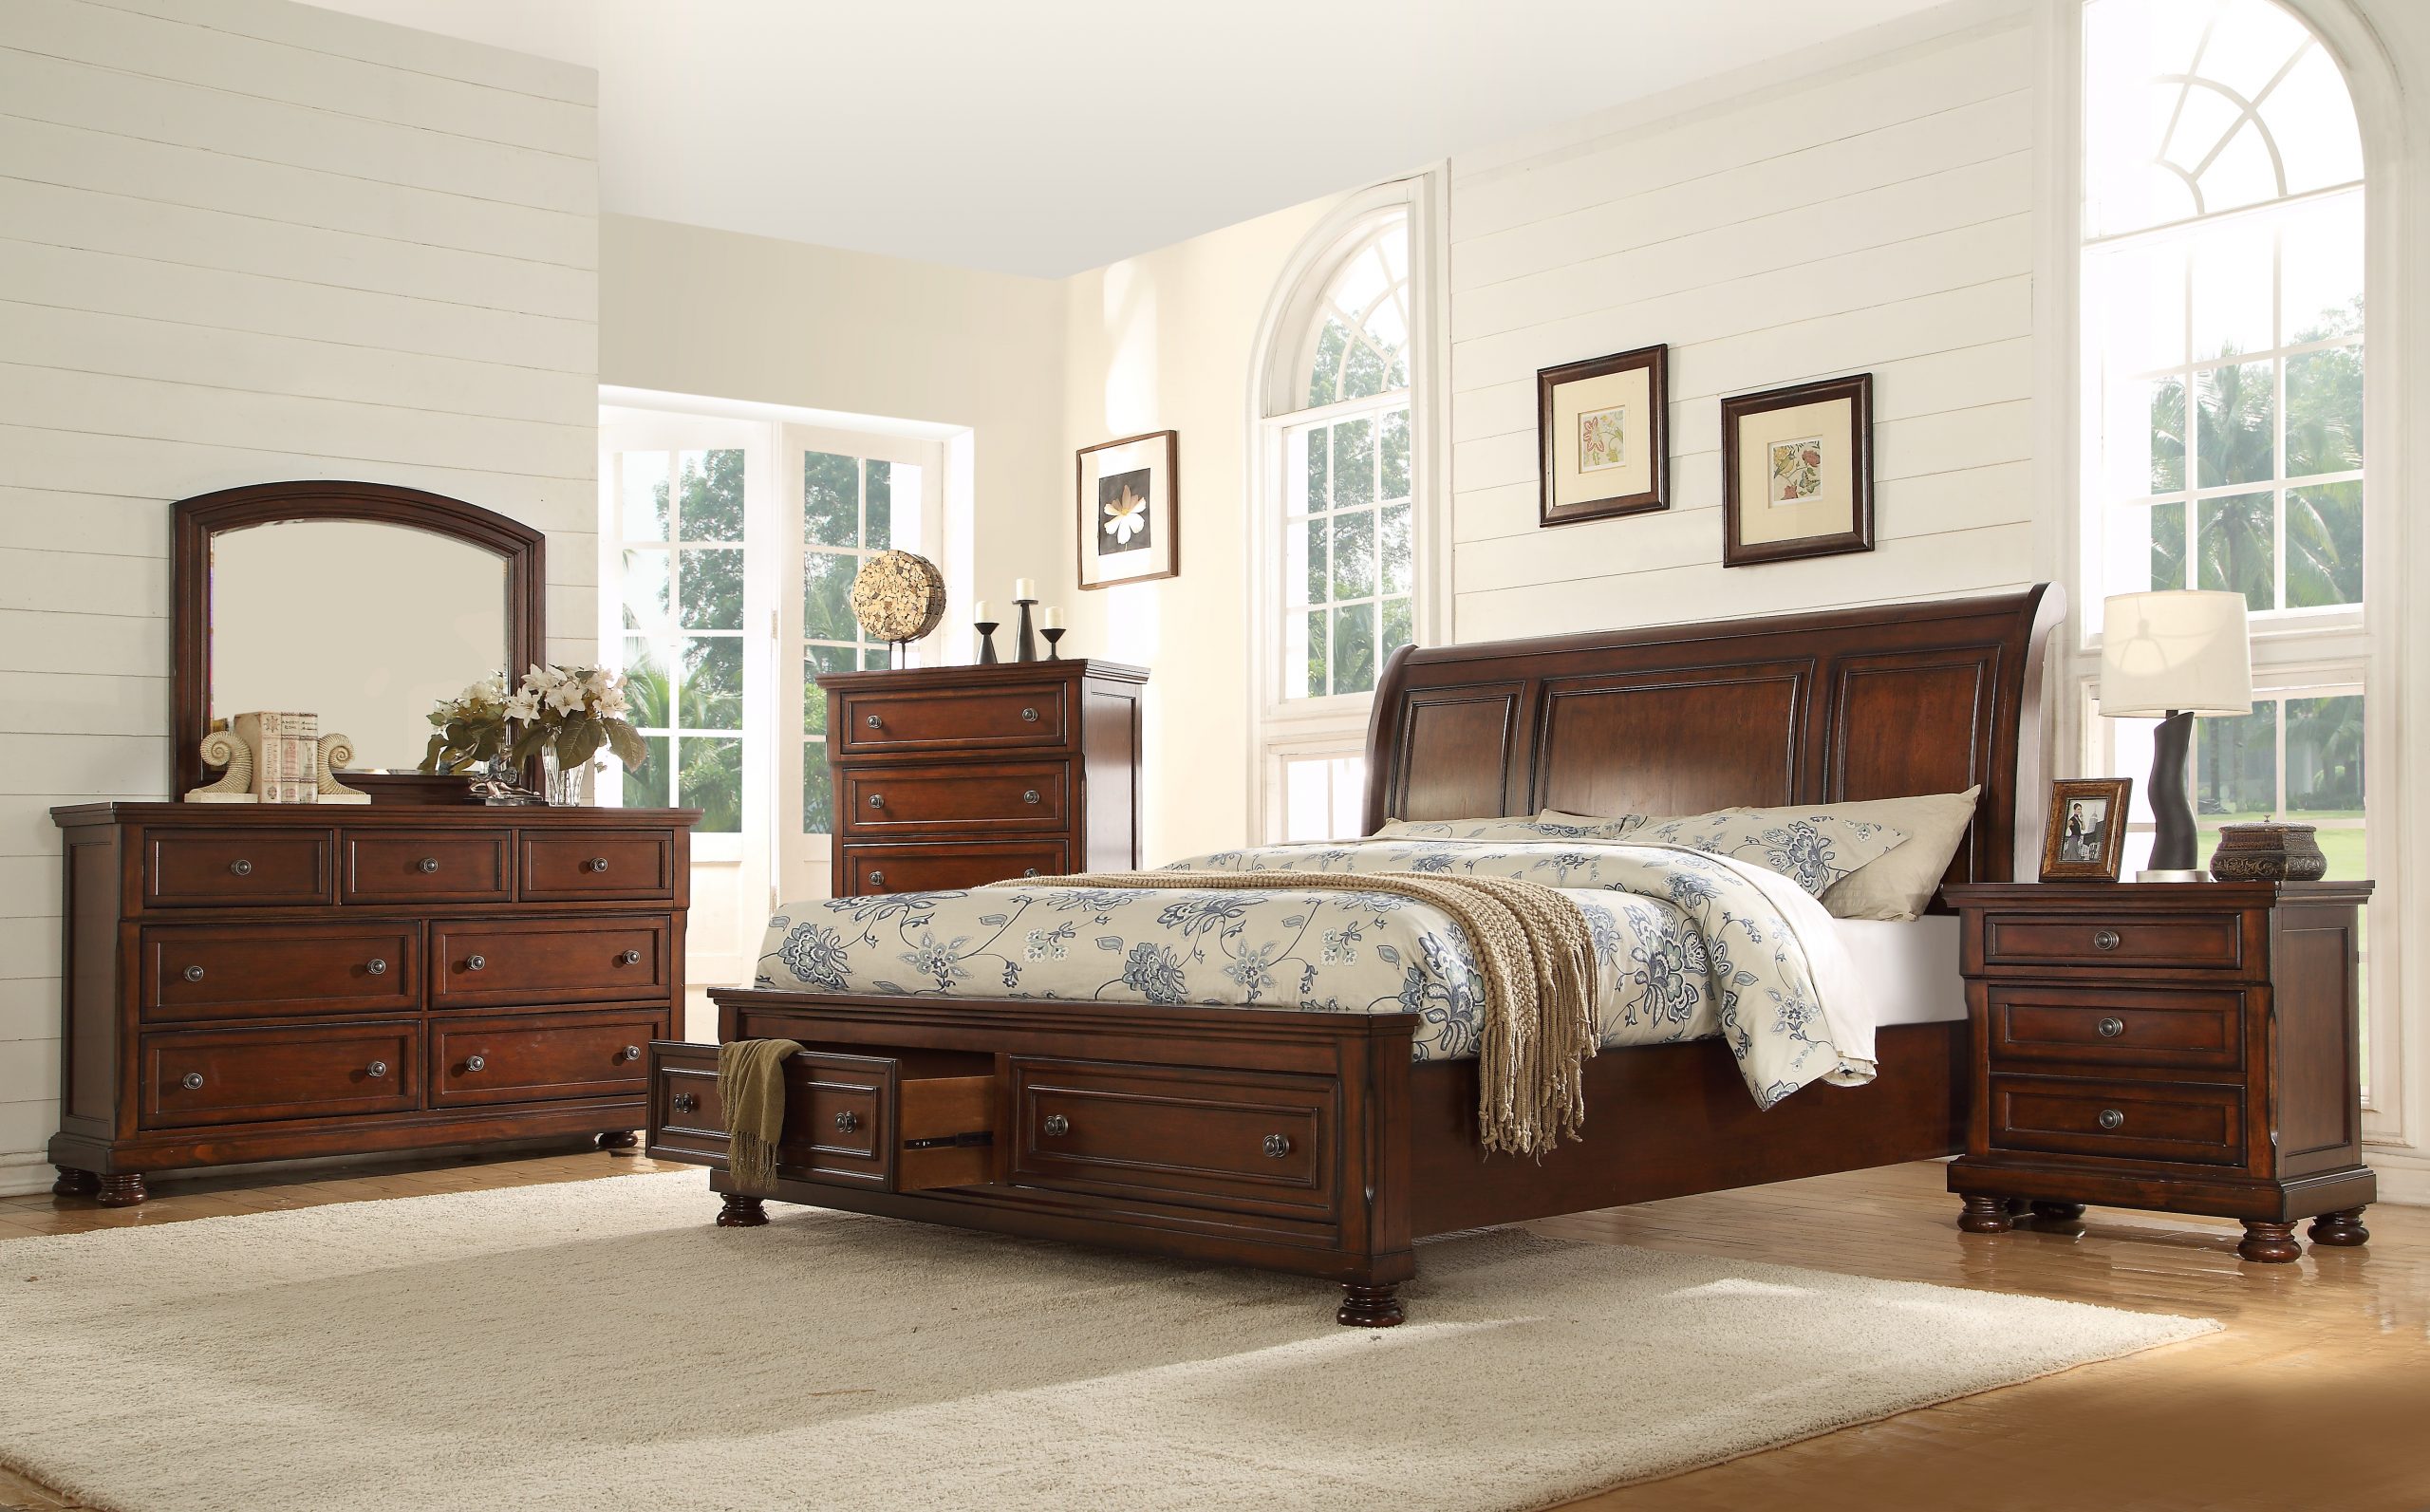 Baltimore 6 Piece Queen Size Bedroom Set 1699 99 Furniture Trends